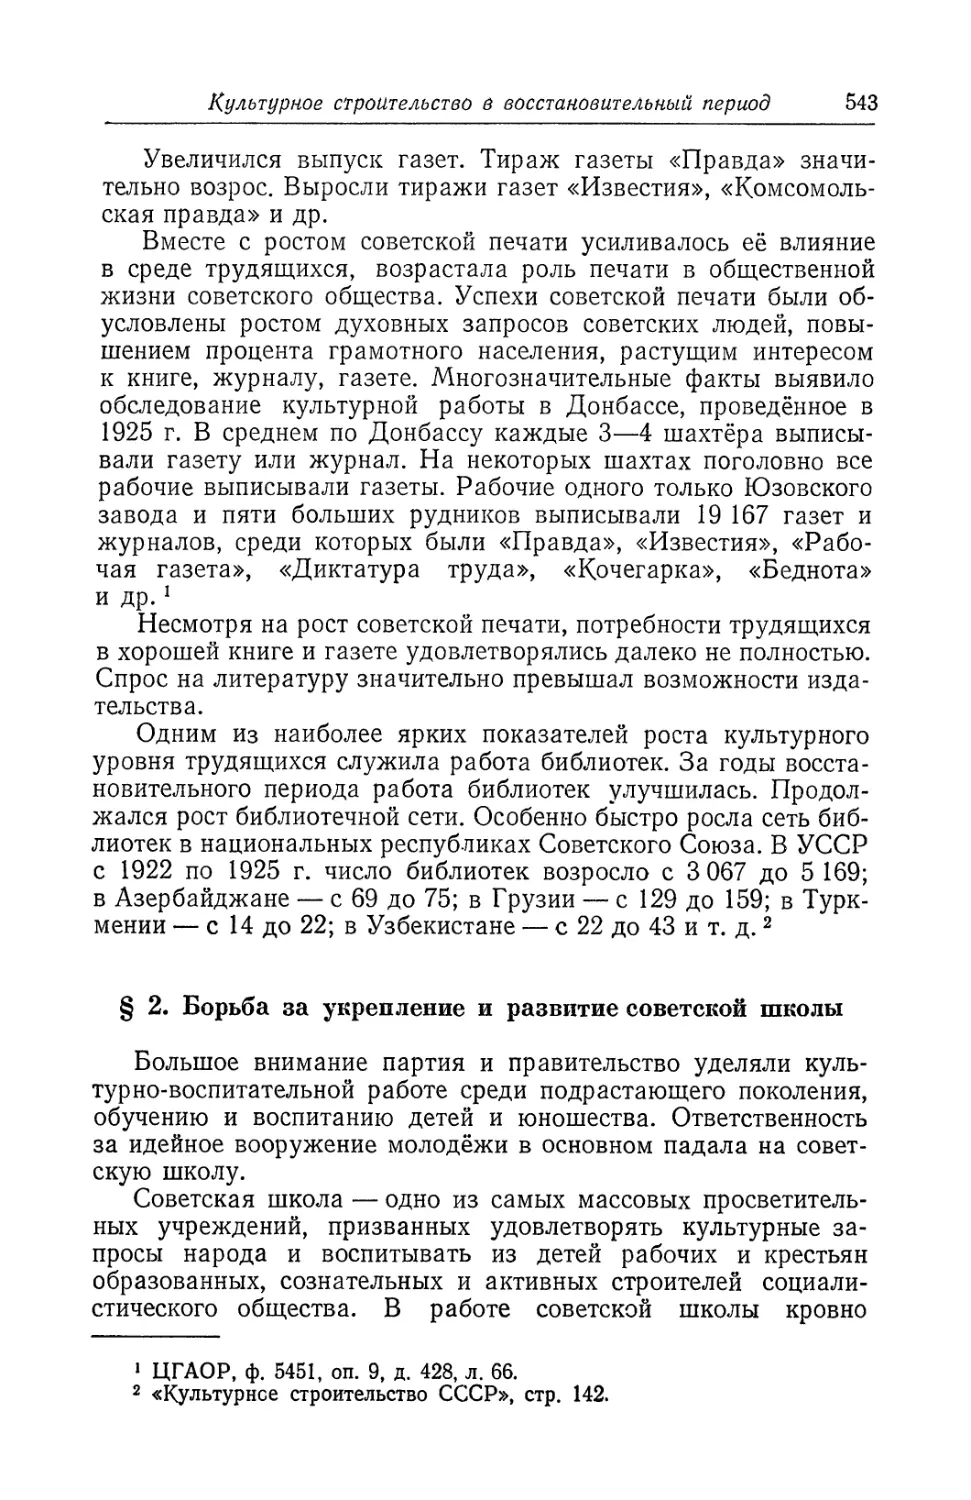 § 2. Борьба за укрепление и развитие советской школы